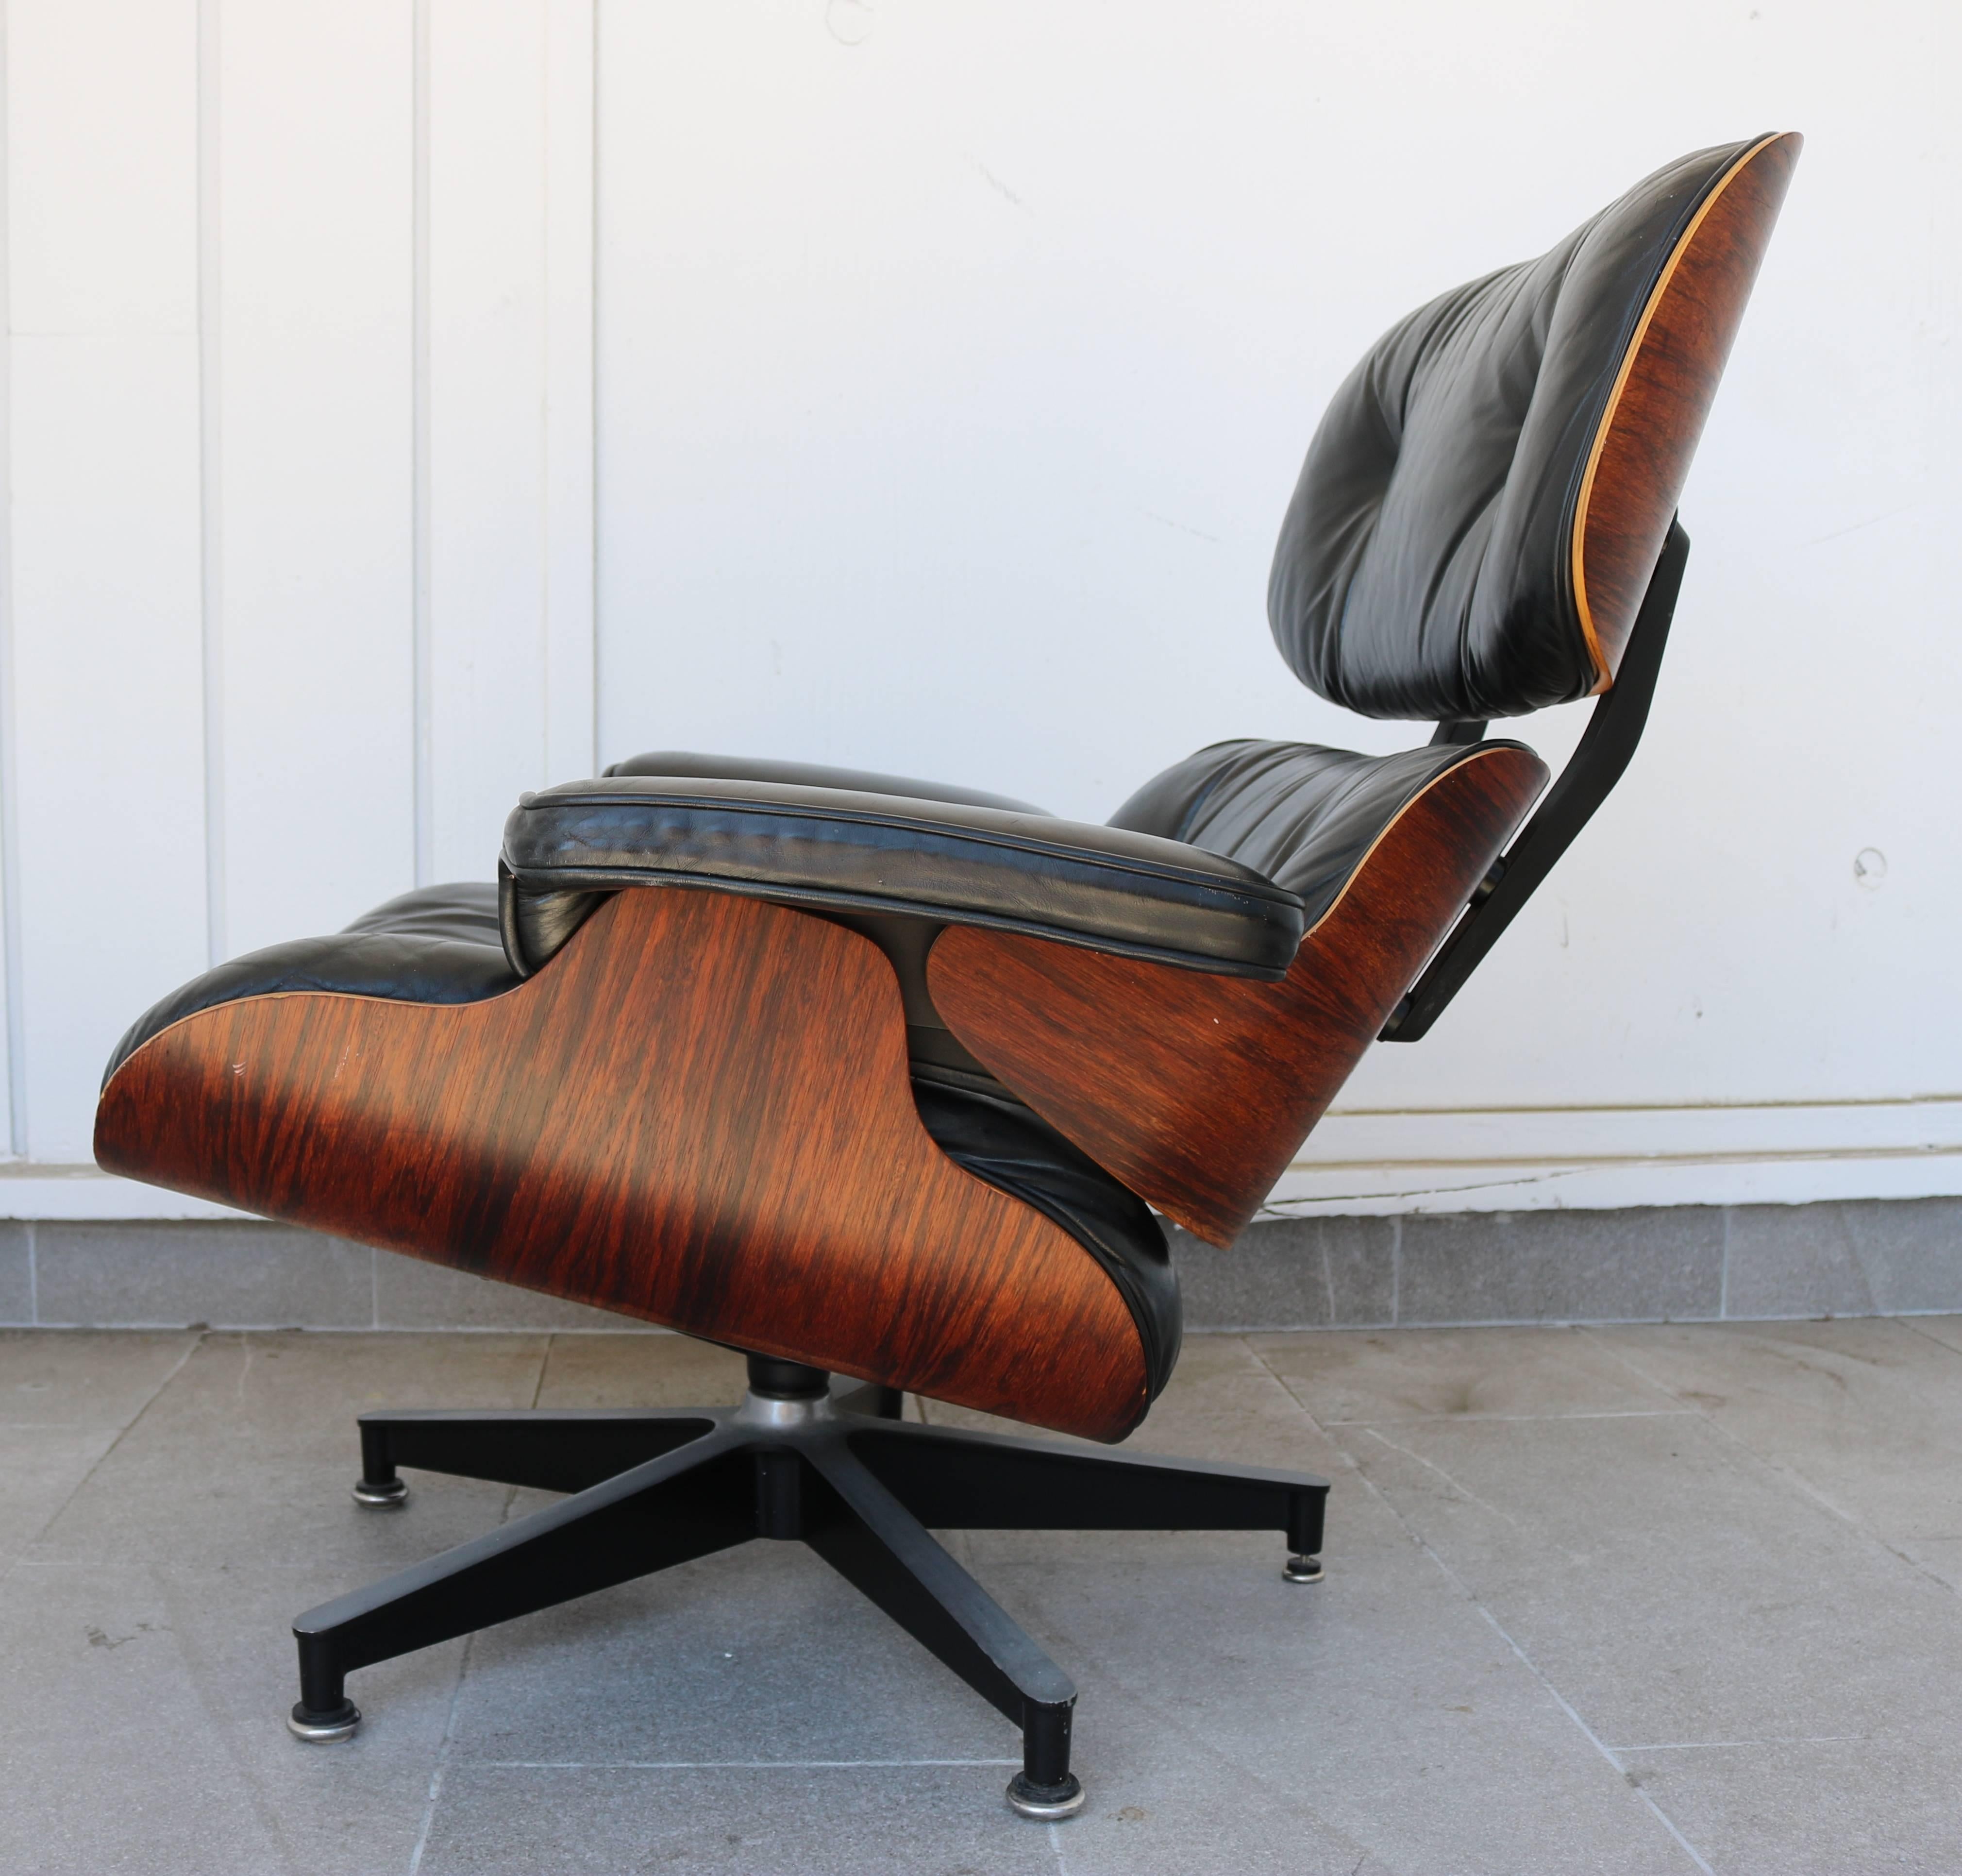 Dieser fünfbeinige Stuhl aus geformtem Sperrholz und Leder wurde 1956 von Charles und Ray Eames für das Möbelunternehmen Herman Miller entworfen. Sie heißt offiziell Eames Lounge 670 und wurde 1956 nach jahrelanger Entwicklung durch die Designer auf